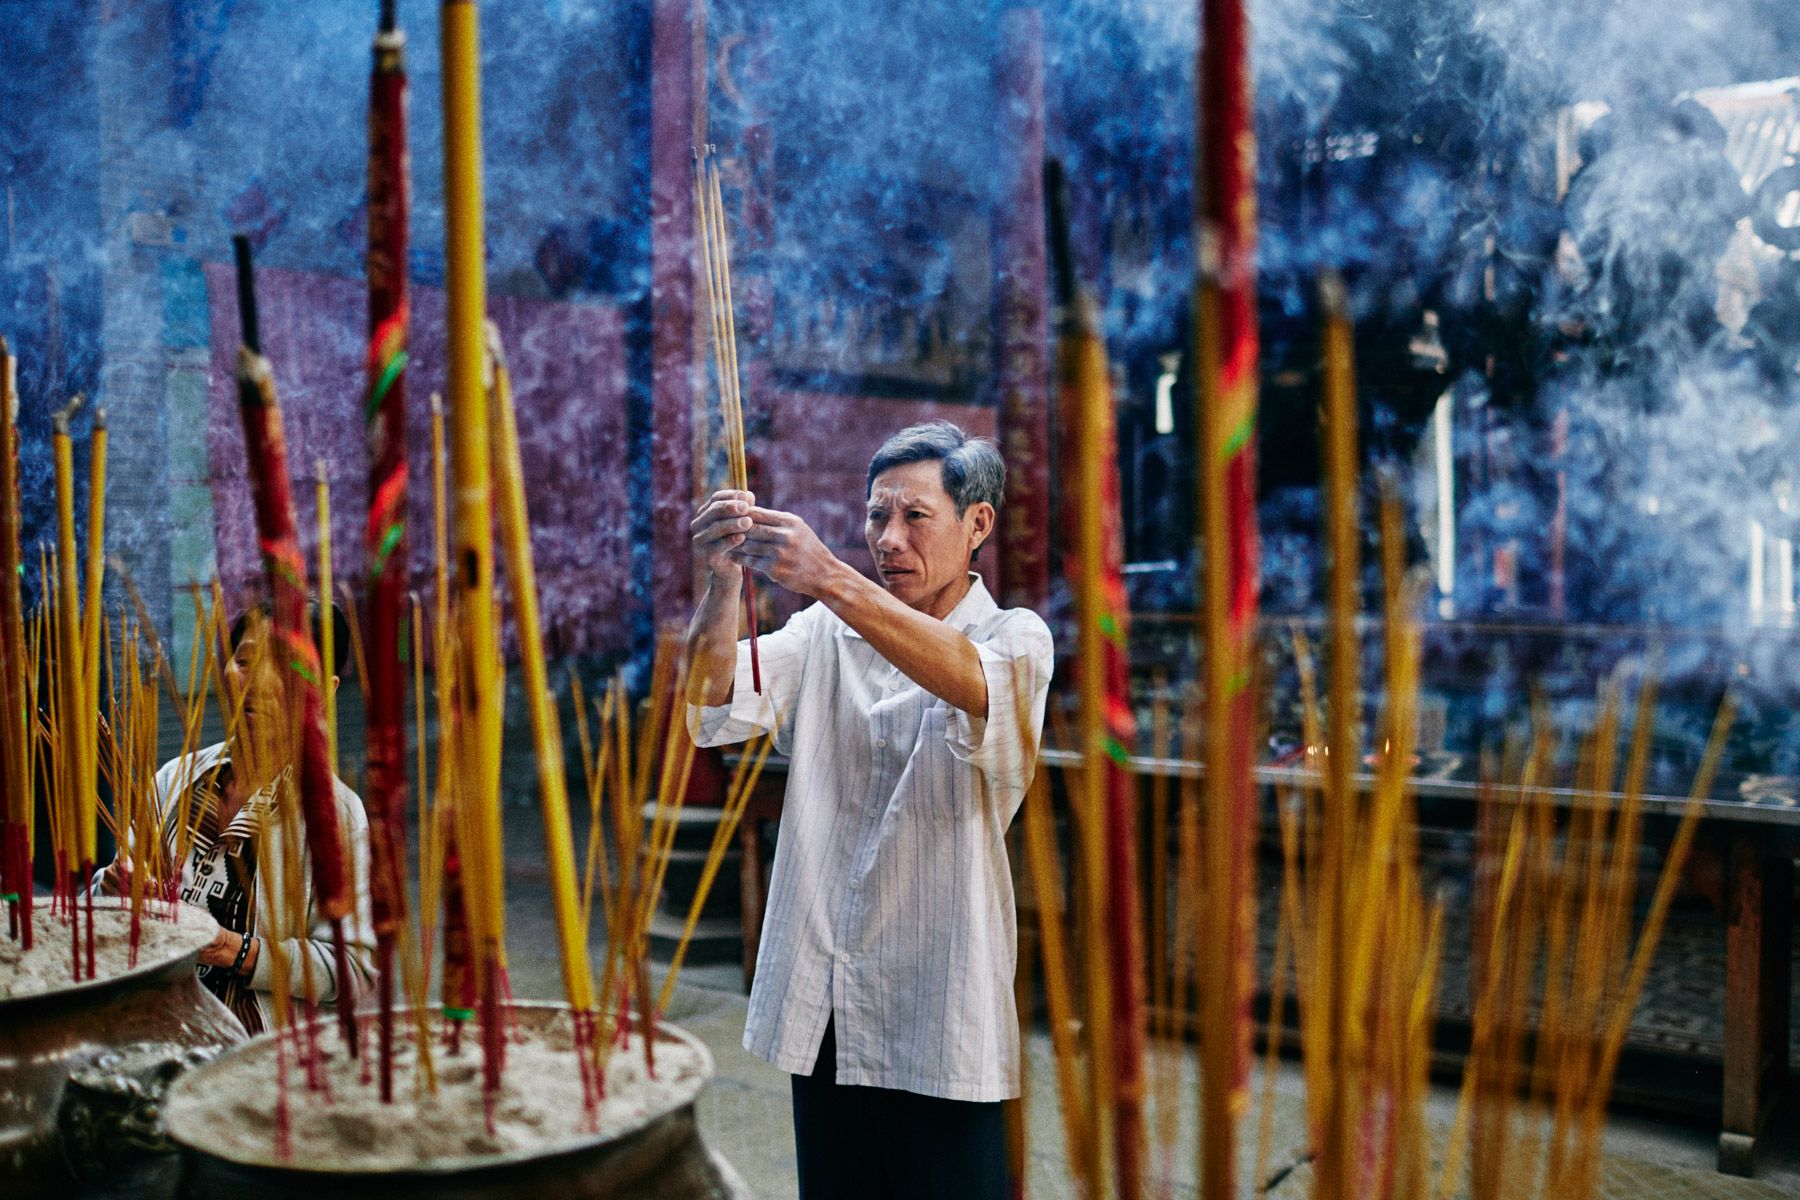 A man burns incense at Thien Hau Pagoda in Ho Chi Minh City, Vietnam.